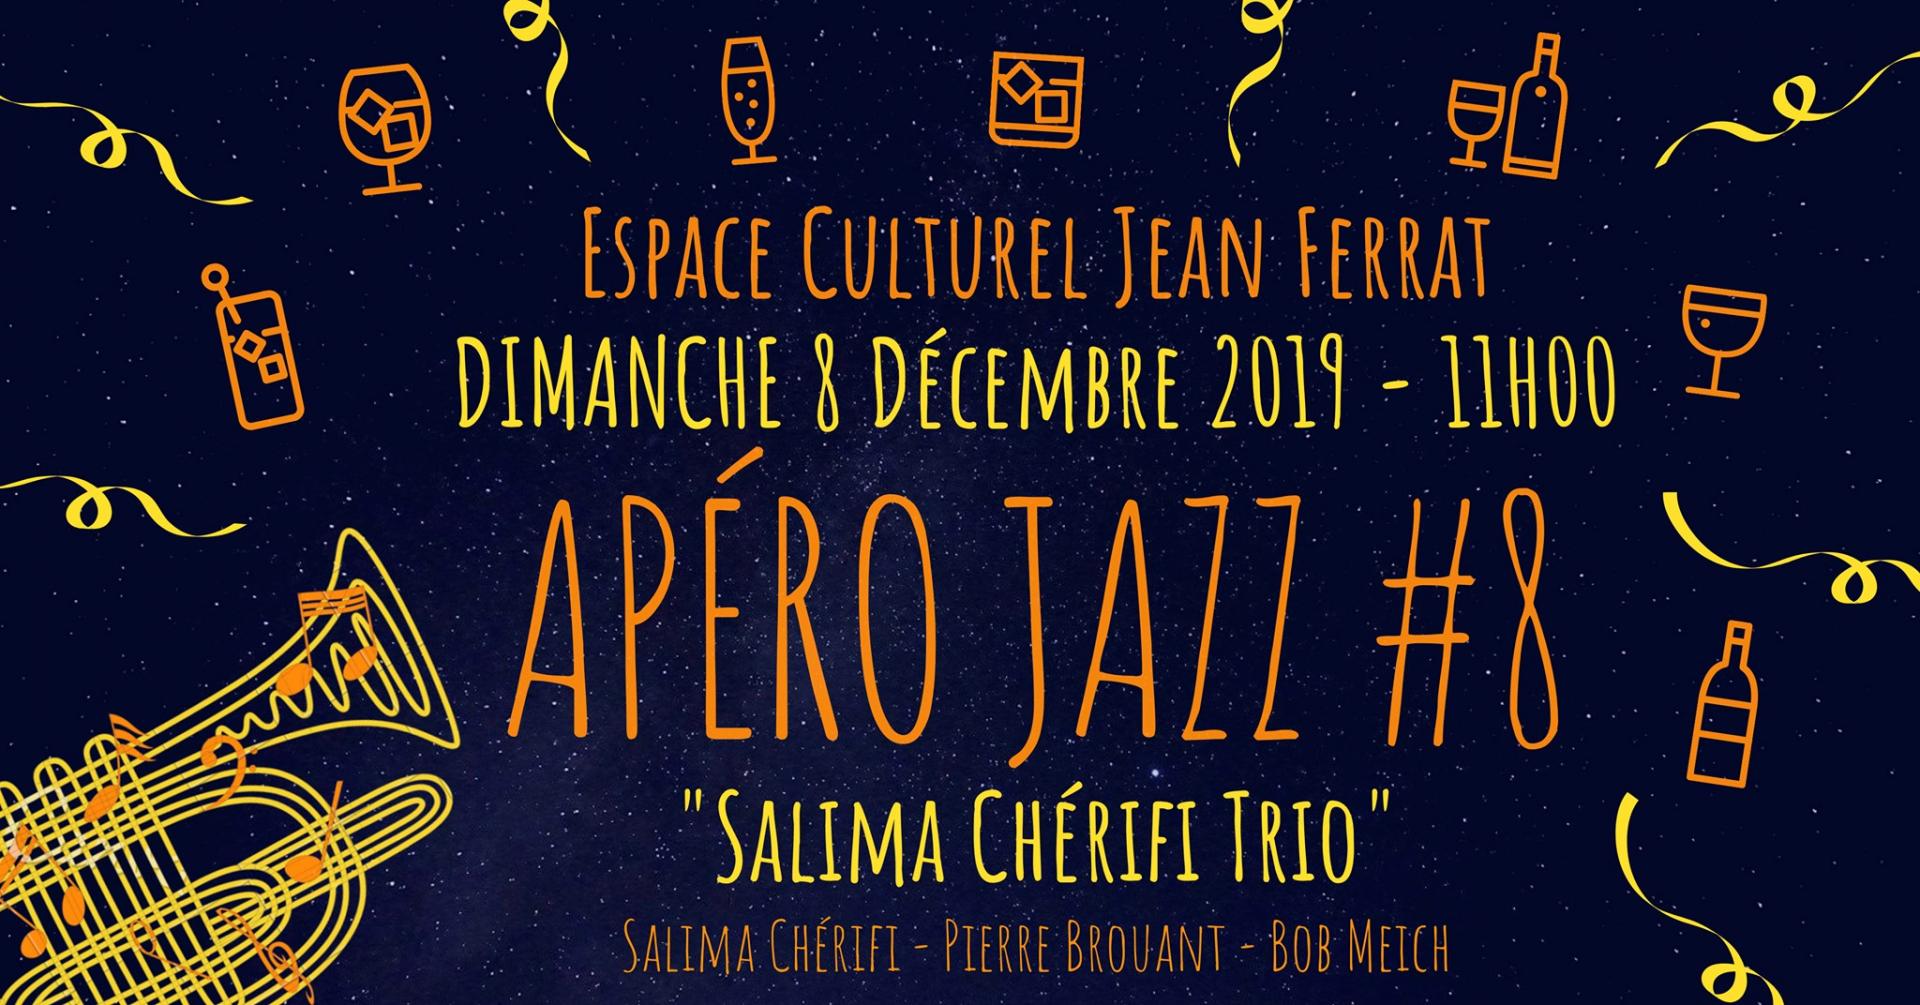 Apéro Jazz #8 - Salima Chérifi Trio